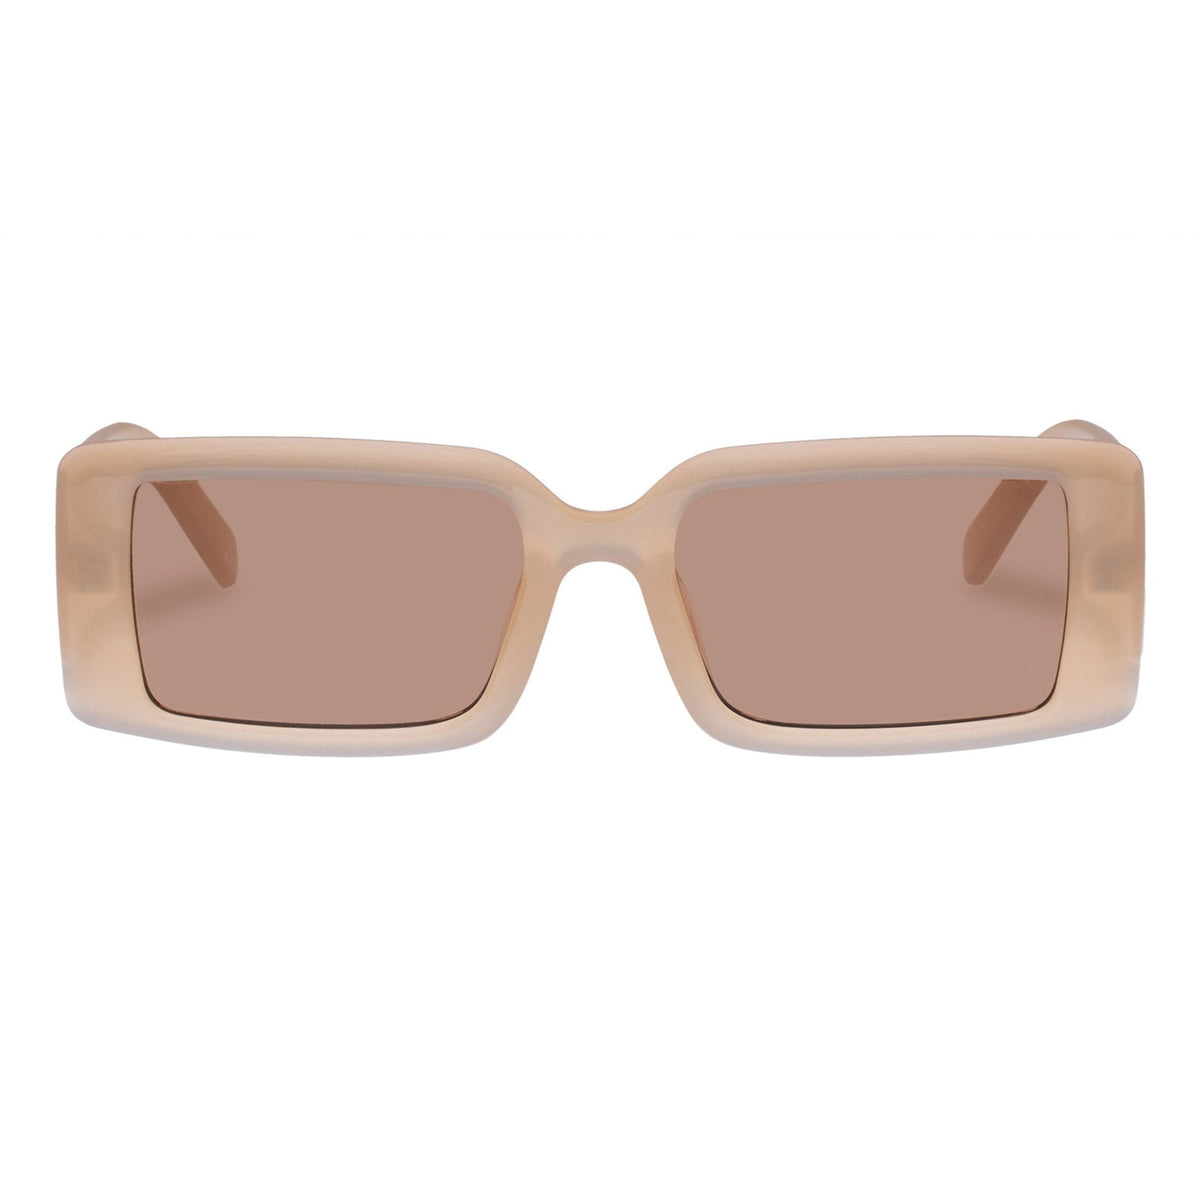 Le Specs - The Impeccable ALT FIT Sunglasses - Linen/Lt. Brown 